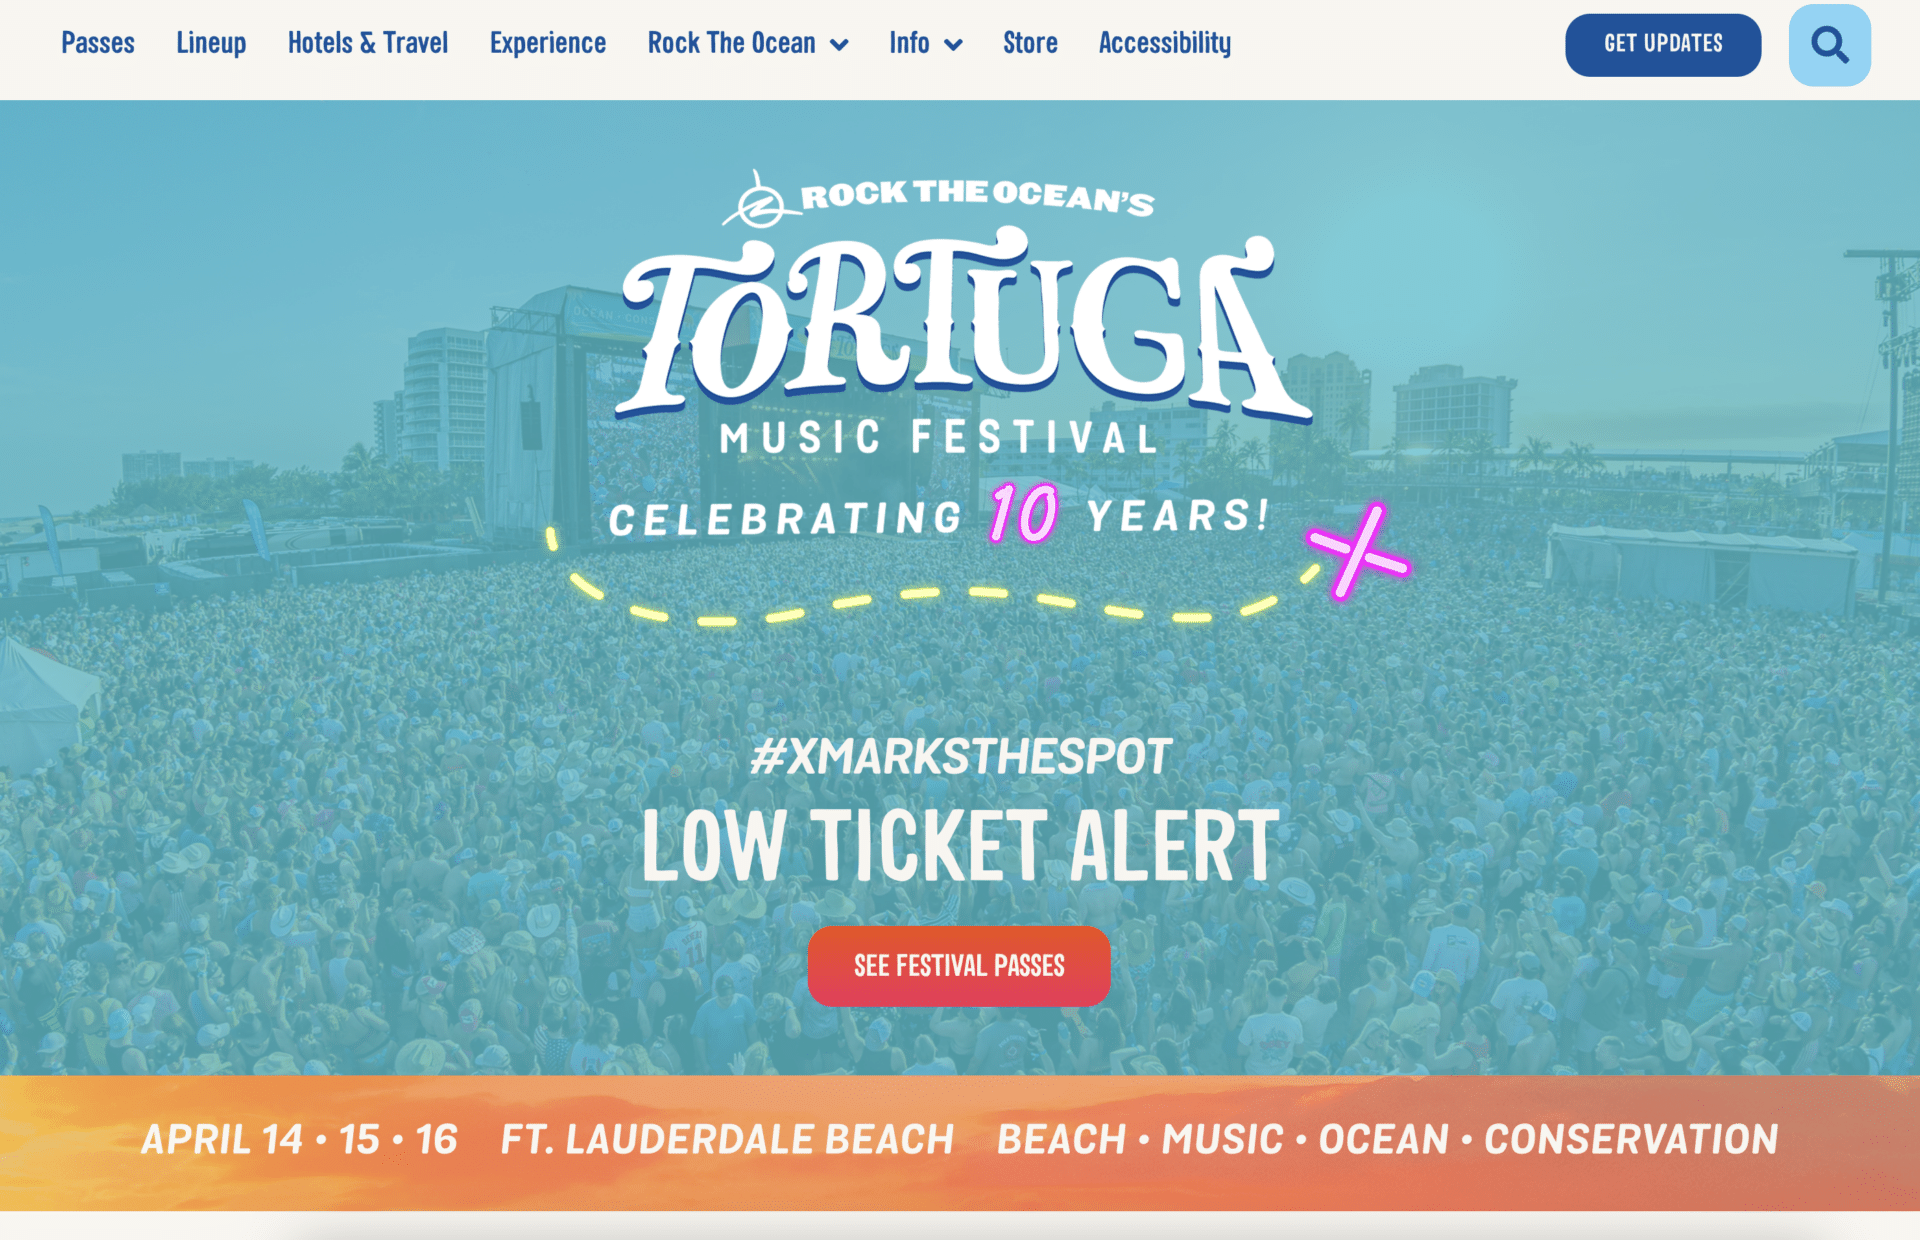 Tortuga Music Festival: Website 